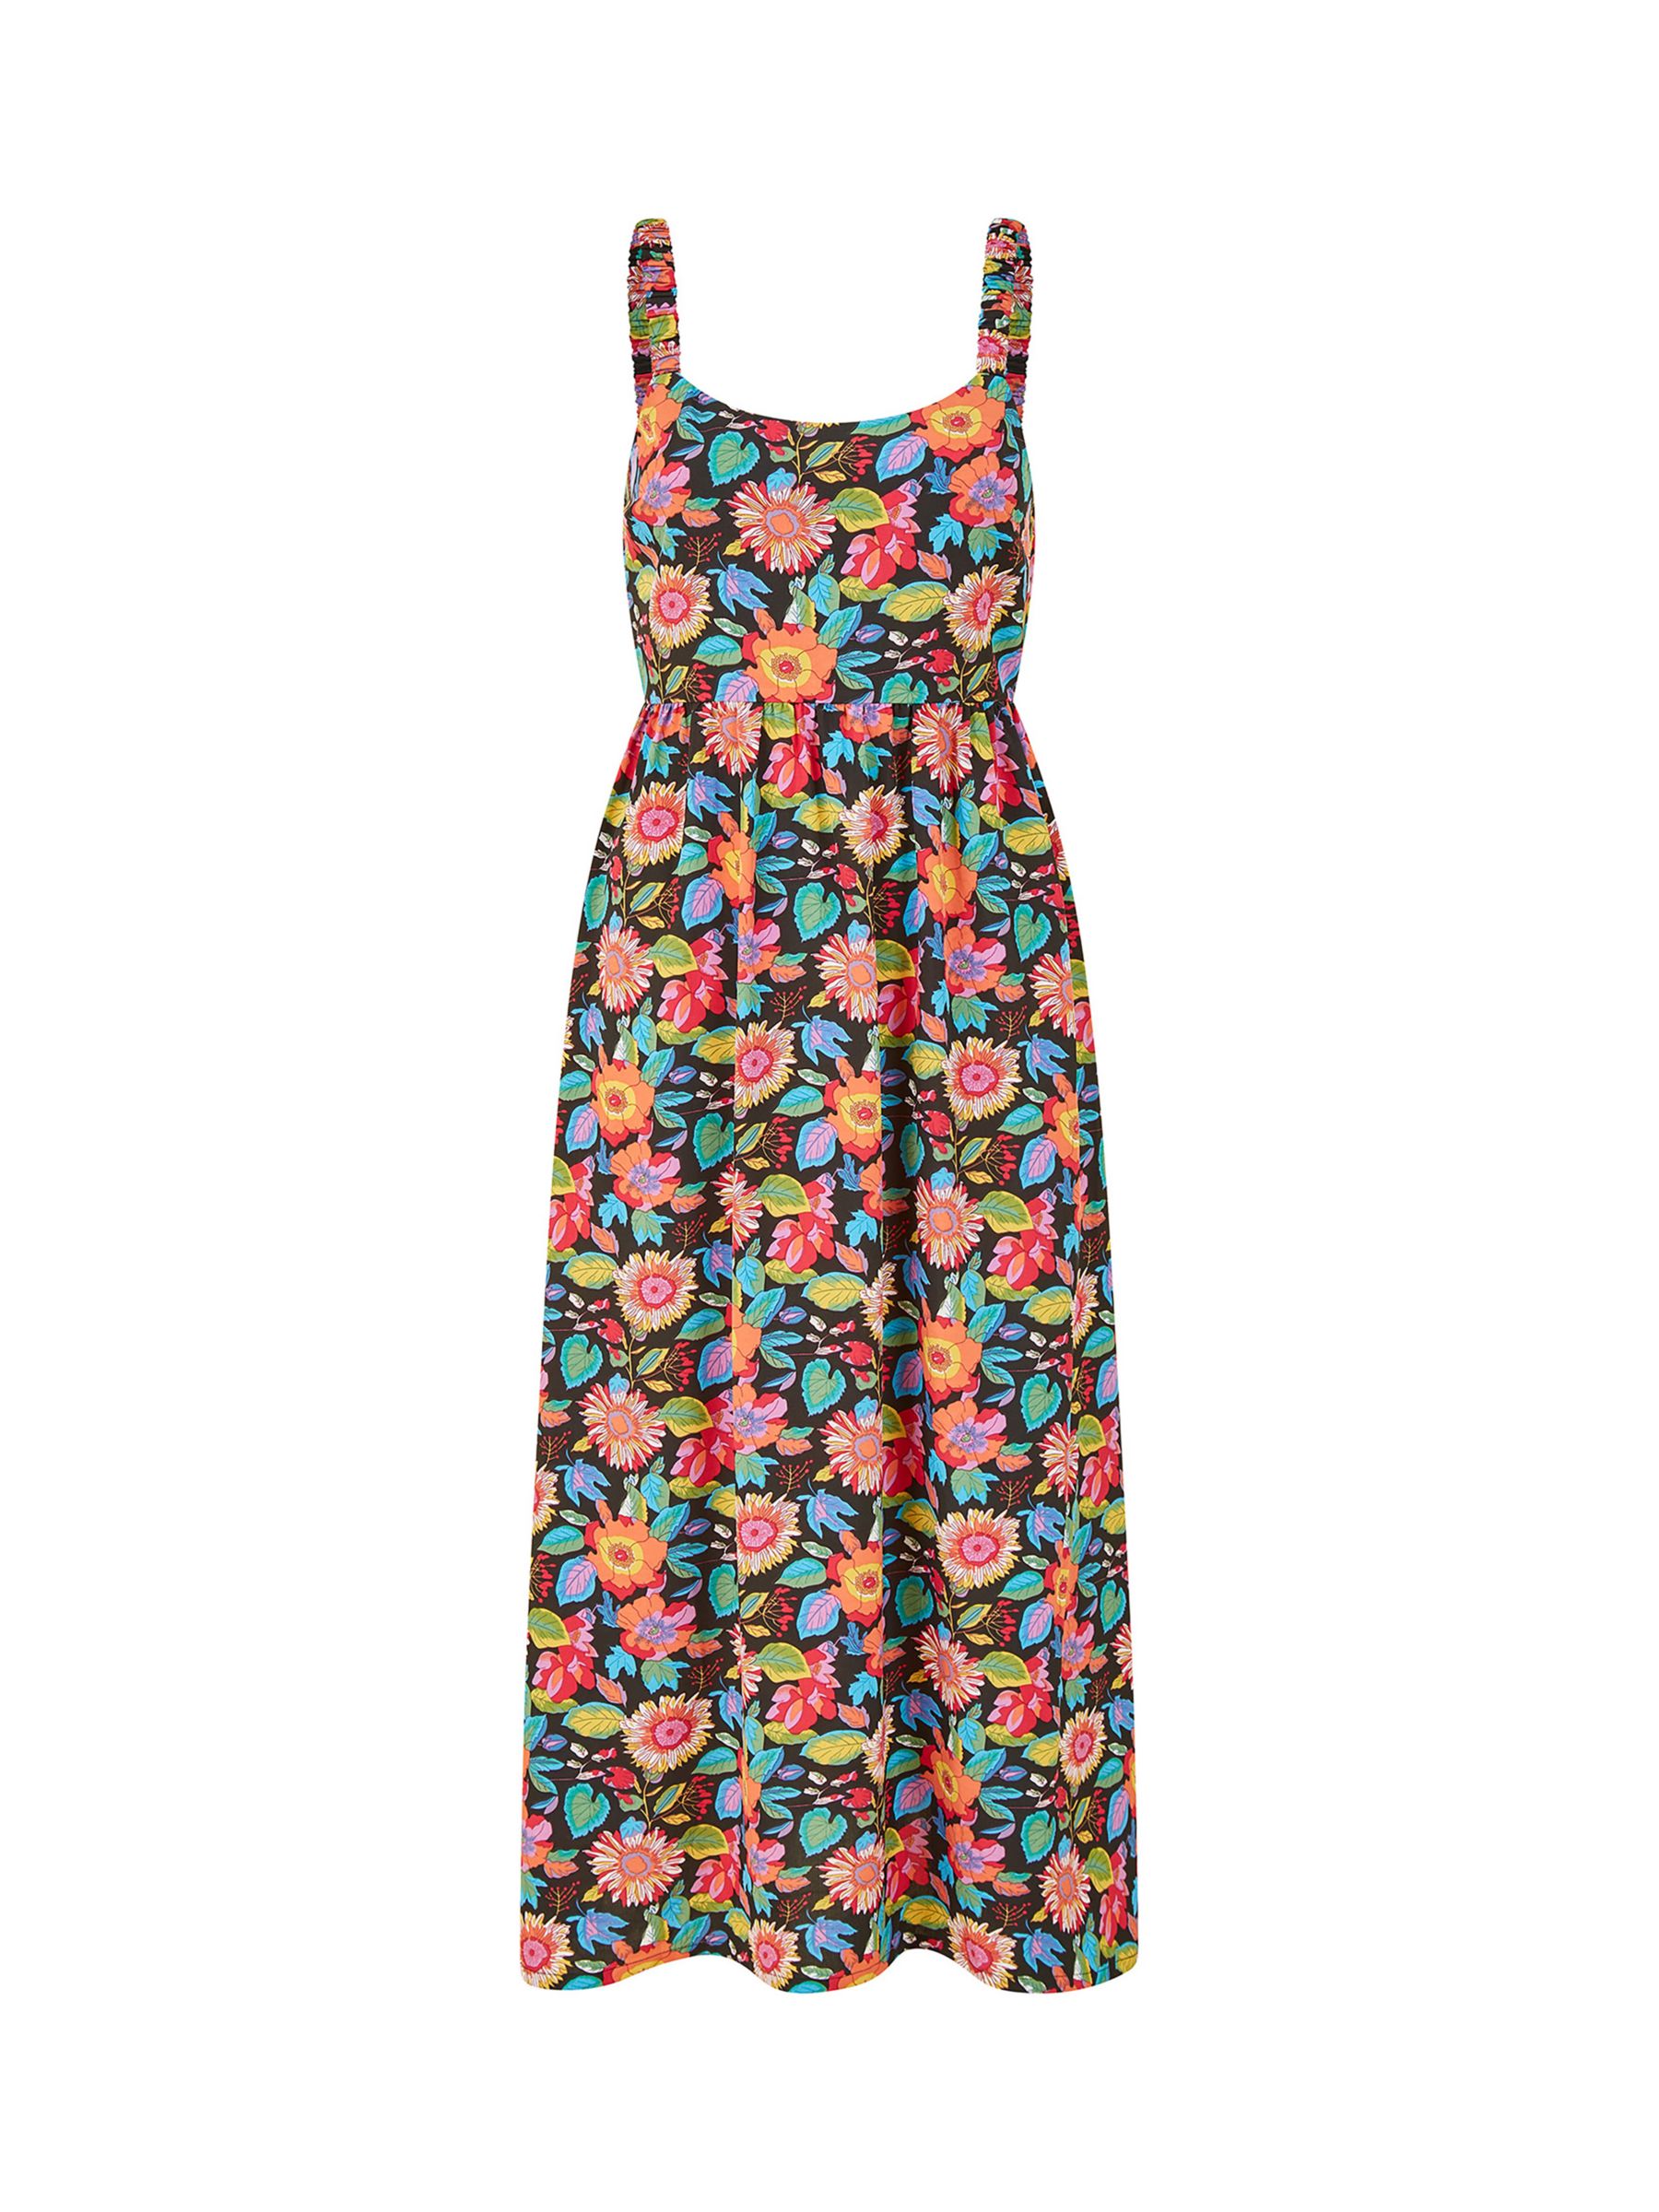 Yumi Strappy Retro Floral Midi Dress, Multi, 8